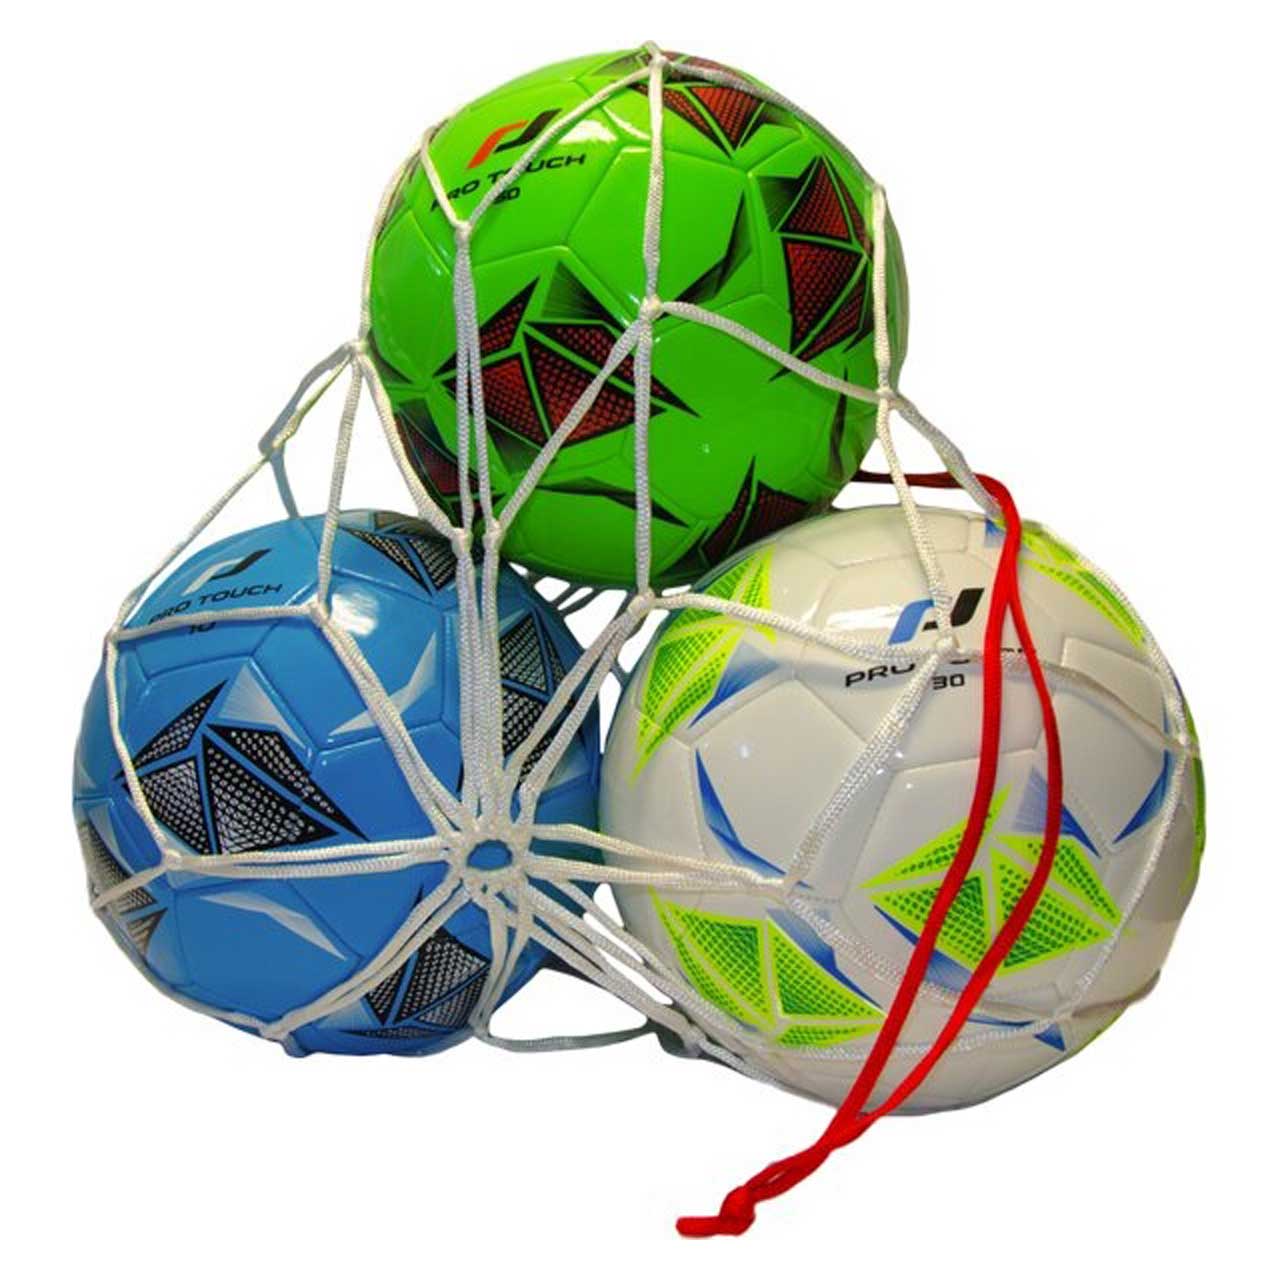 Balltragenetz 3-Ball 